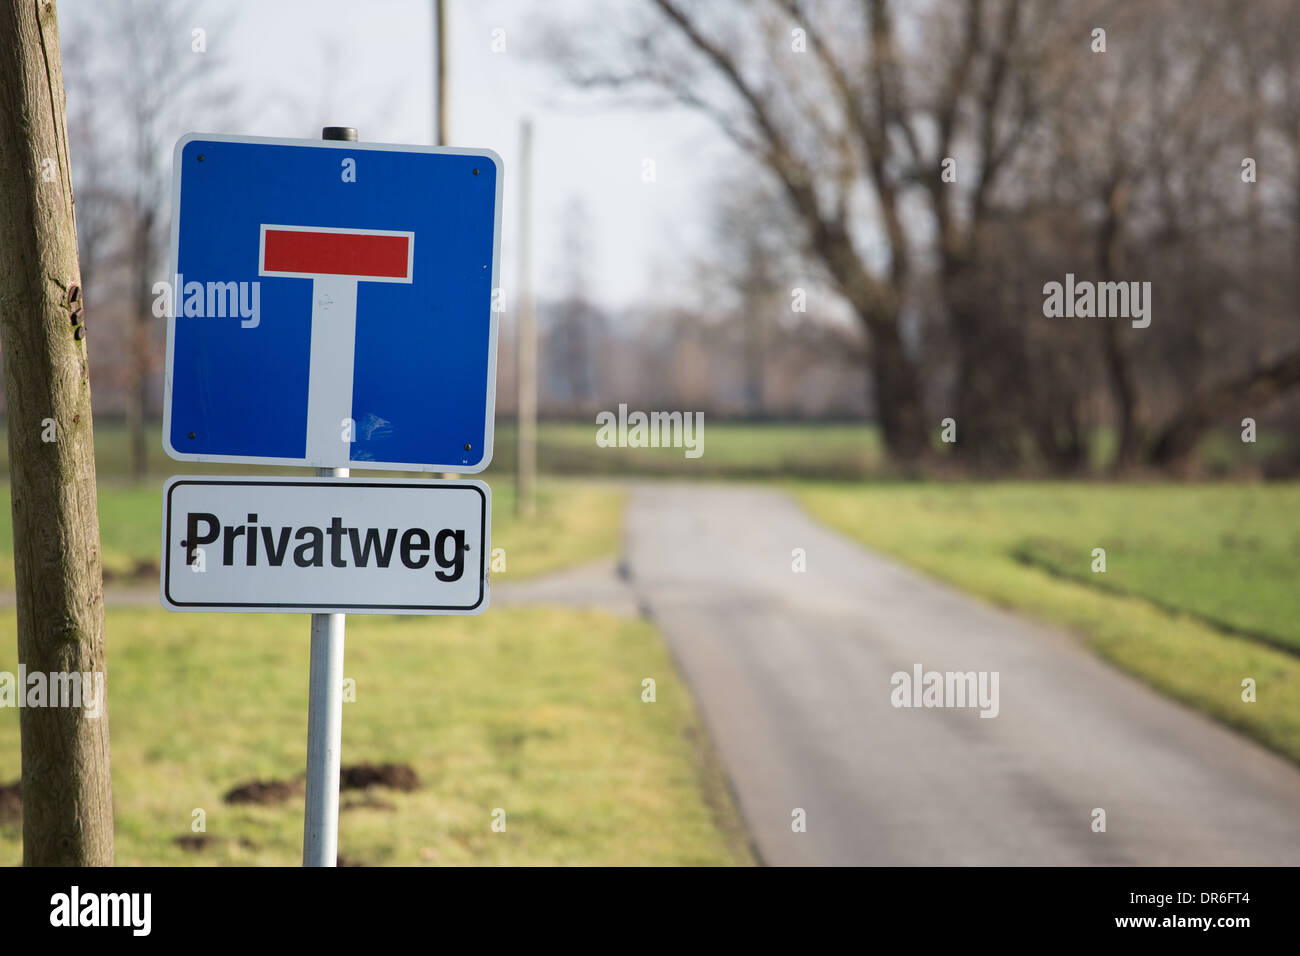 Privatweg - private road - sign Stock Photo